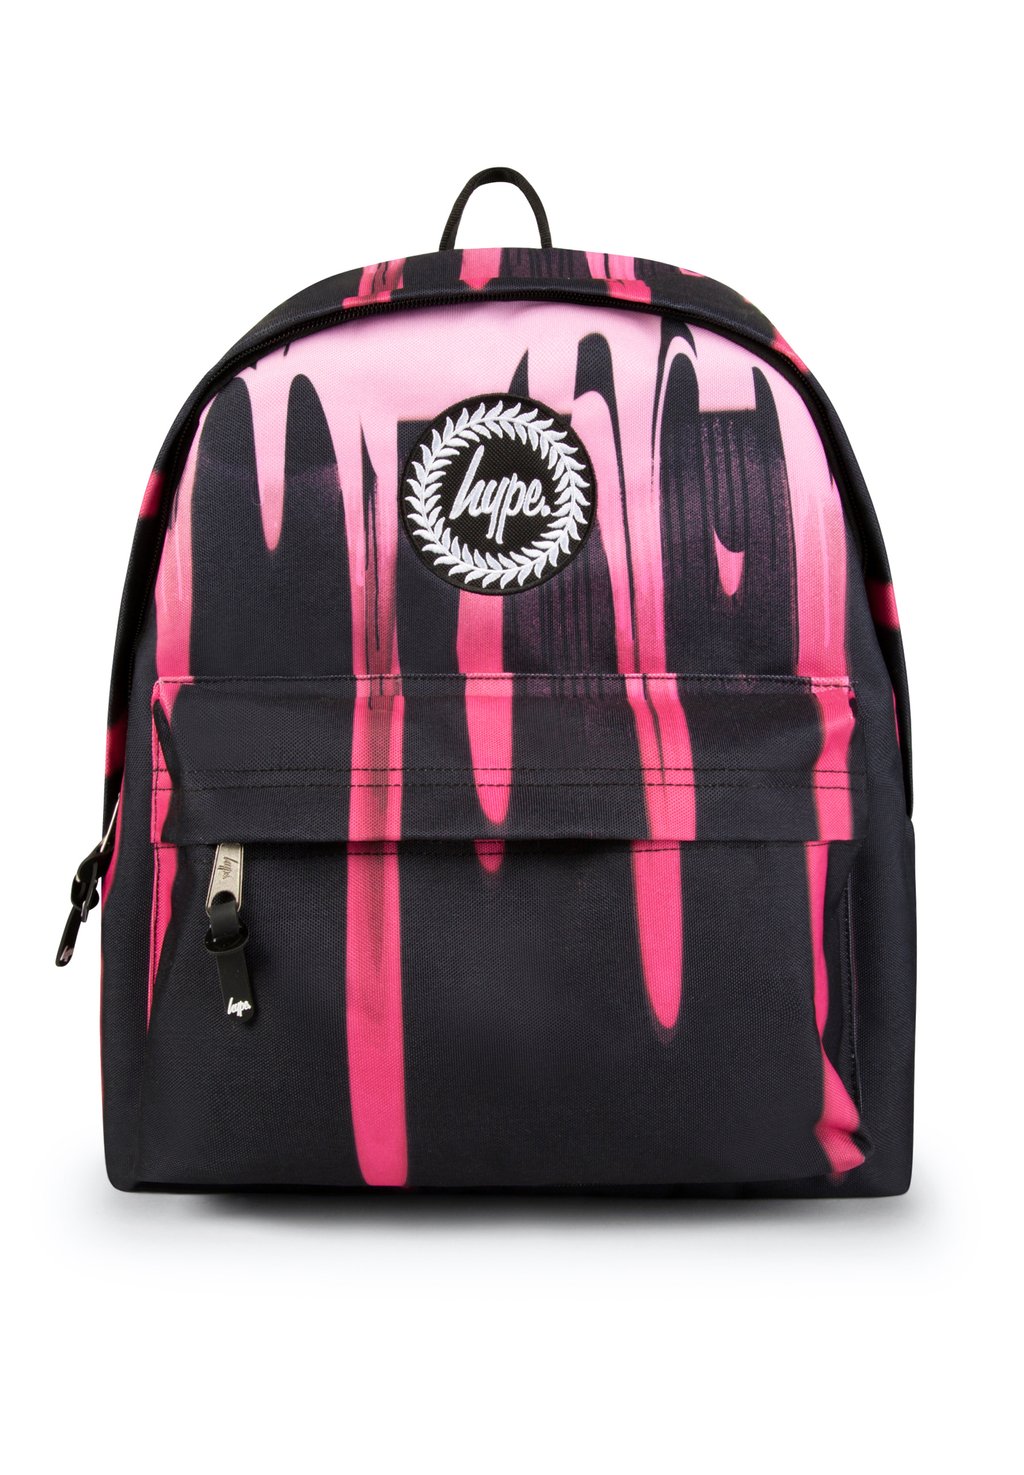 Школьная сумка DRIPS Hype, цвет black